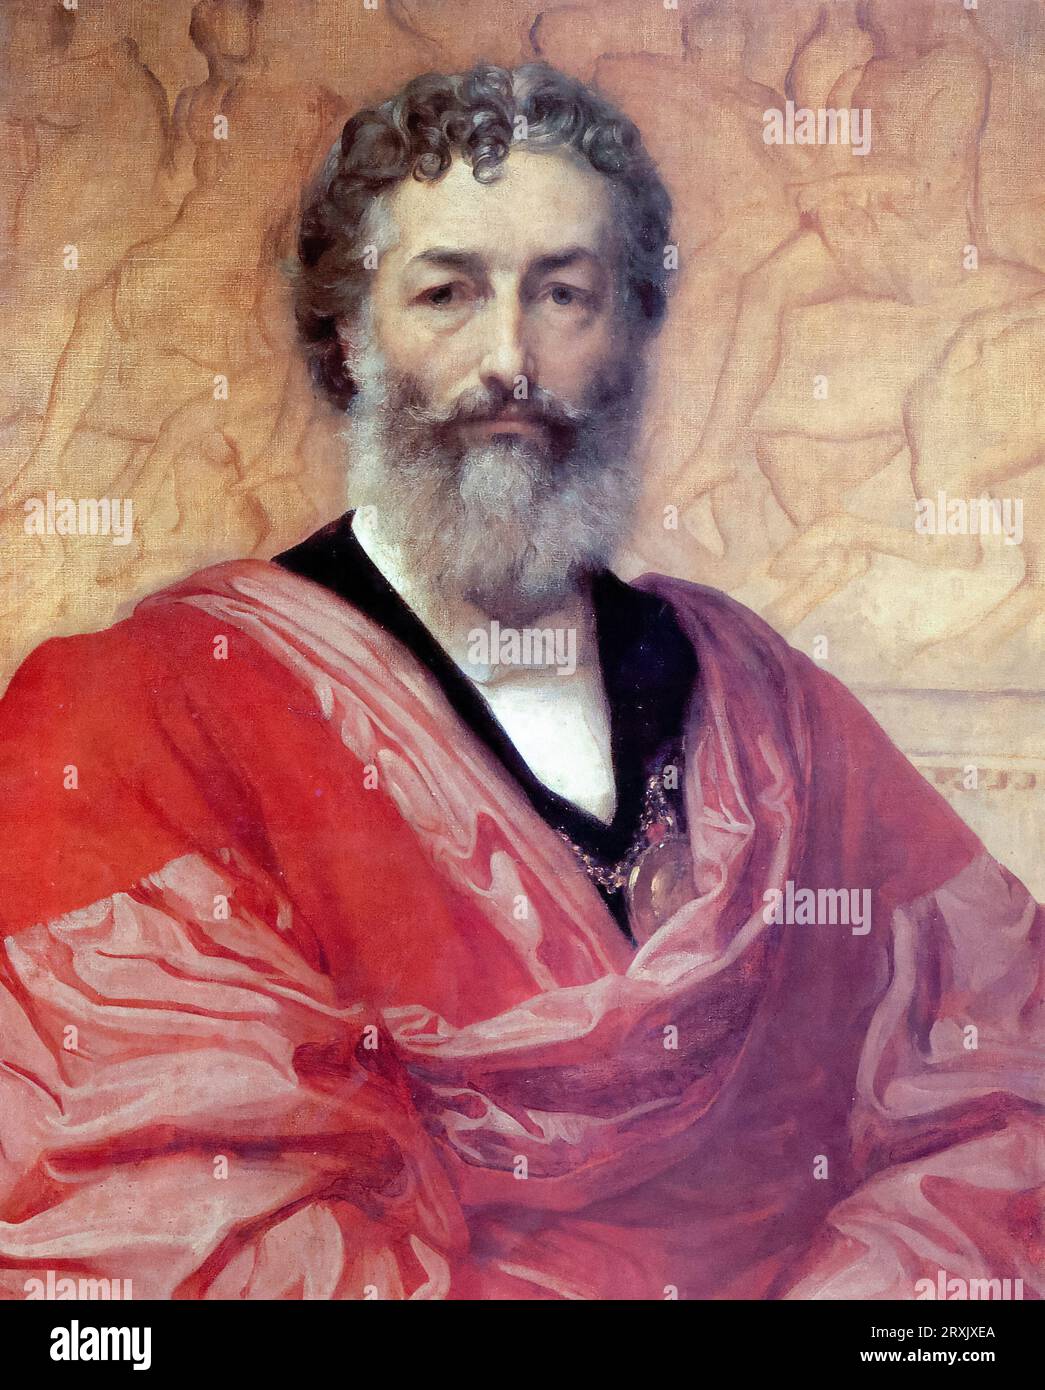 Frederic Leighton, 1e baron Leighton (1830-1896), Autoportrait du peintre, dessinateur et sculpteur victorien britannique, huile sur toile, 1880 Banque D'Images